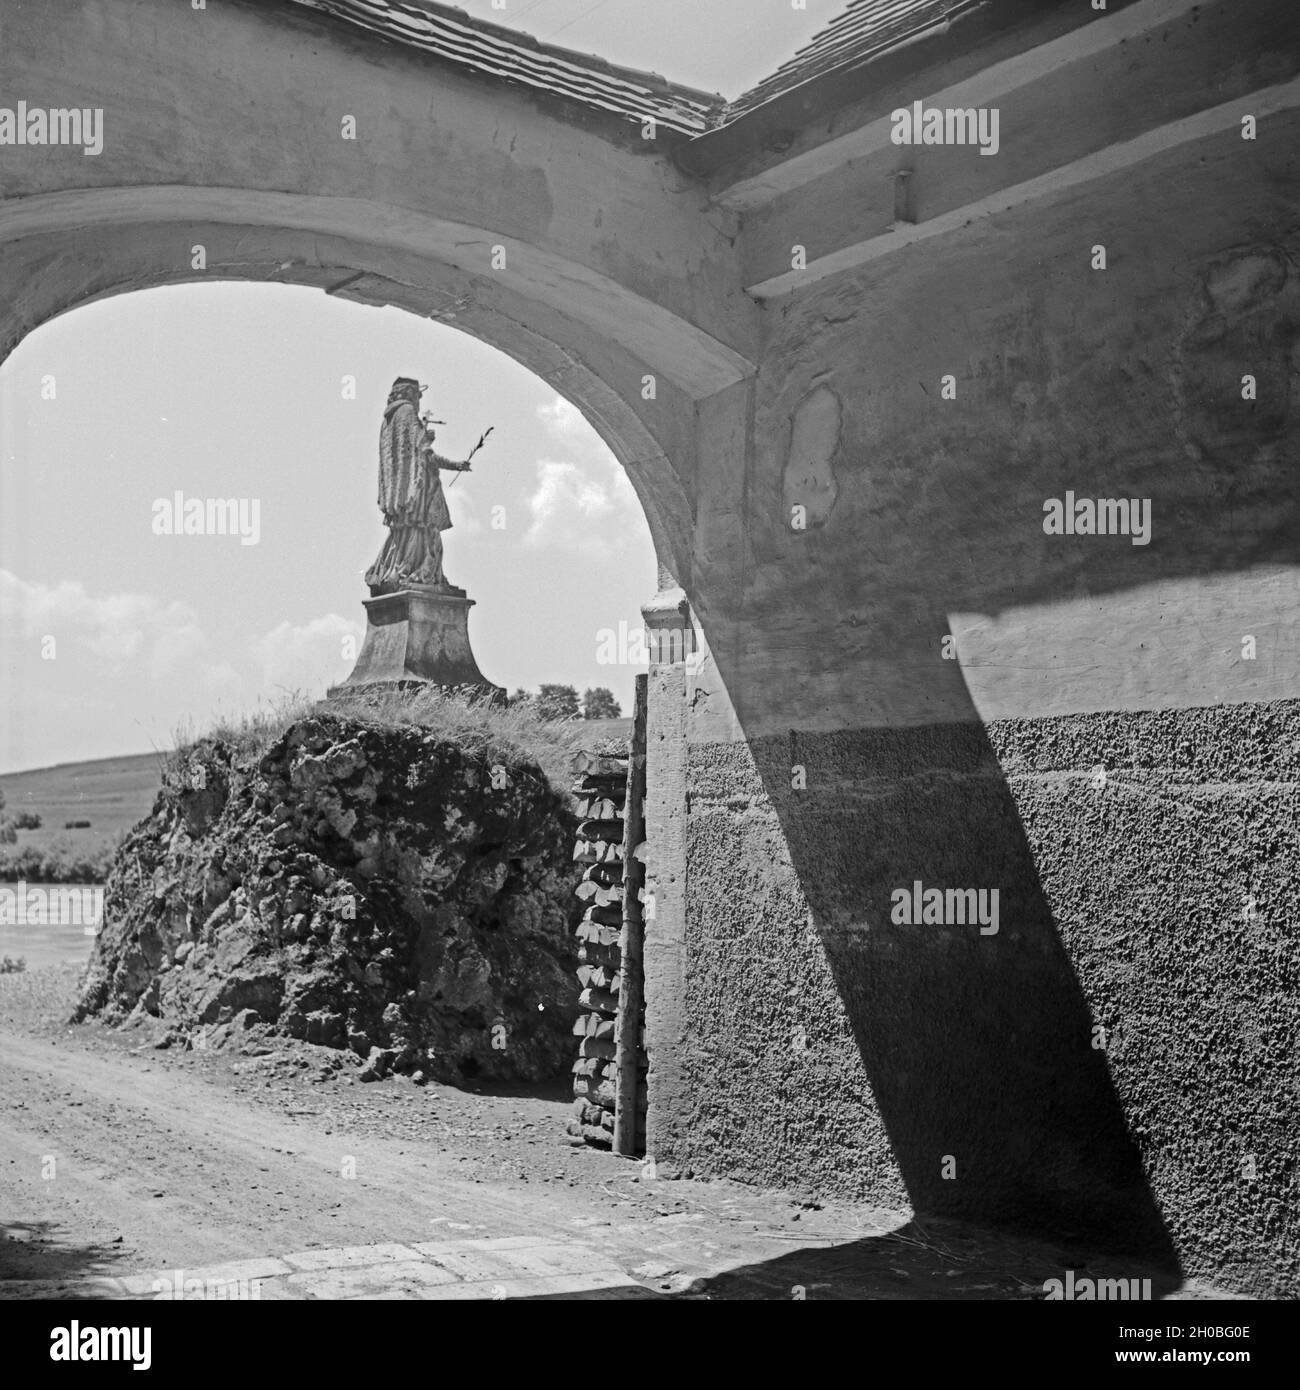 Statue und Schattenspiele im Innenhof von Kloster Weltenburg, Deutschland 1930er Jahre. Scultpure and shadow play at the inner courtyard of Weltenburg Abbey, Germany 1930s. Stock Photo